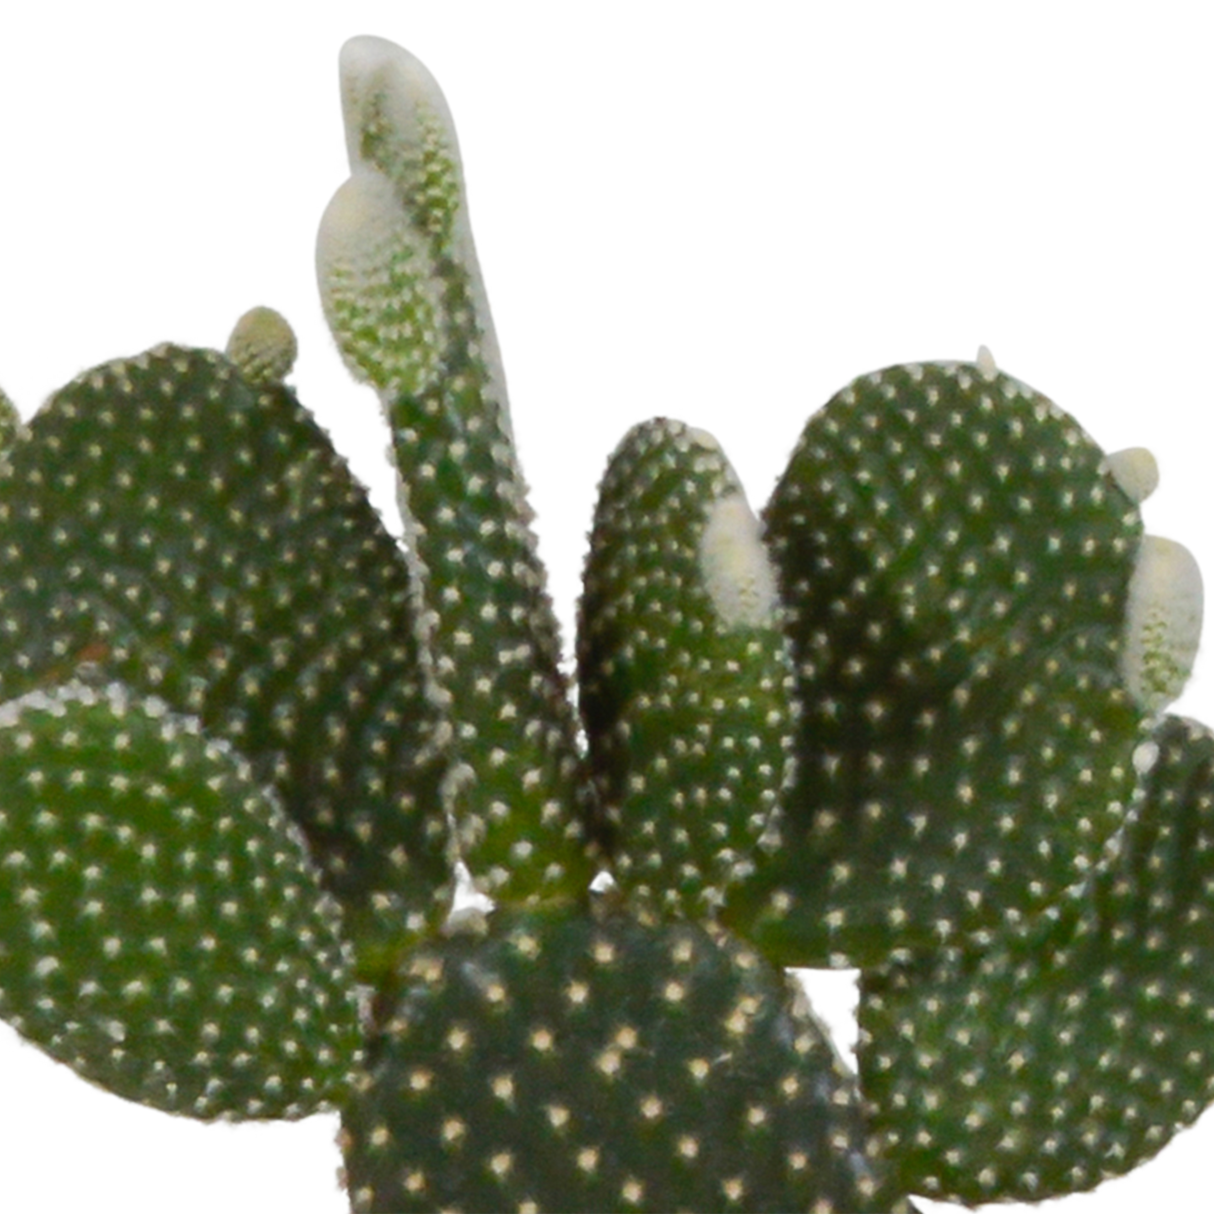 Coffret cactus et ses caches-pots terracotta - Lot de 3 plantes, h23cm